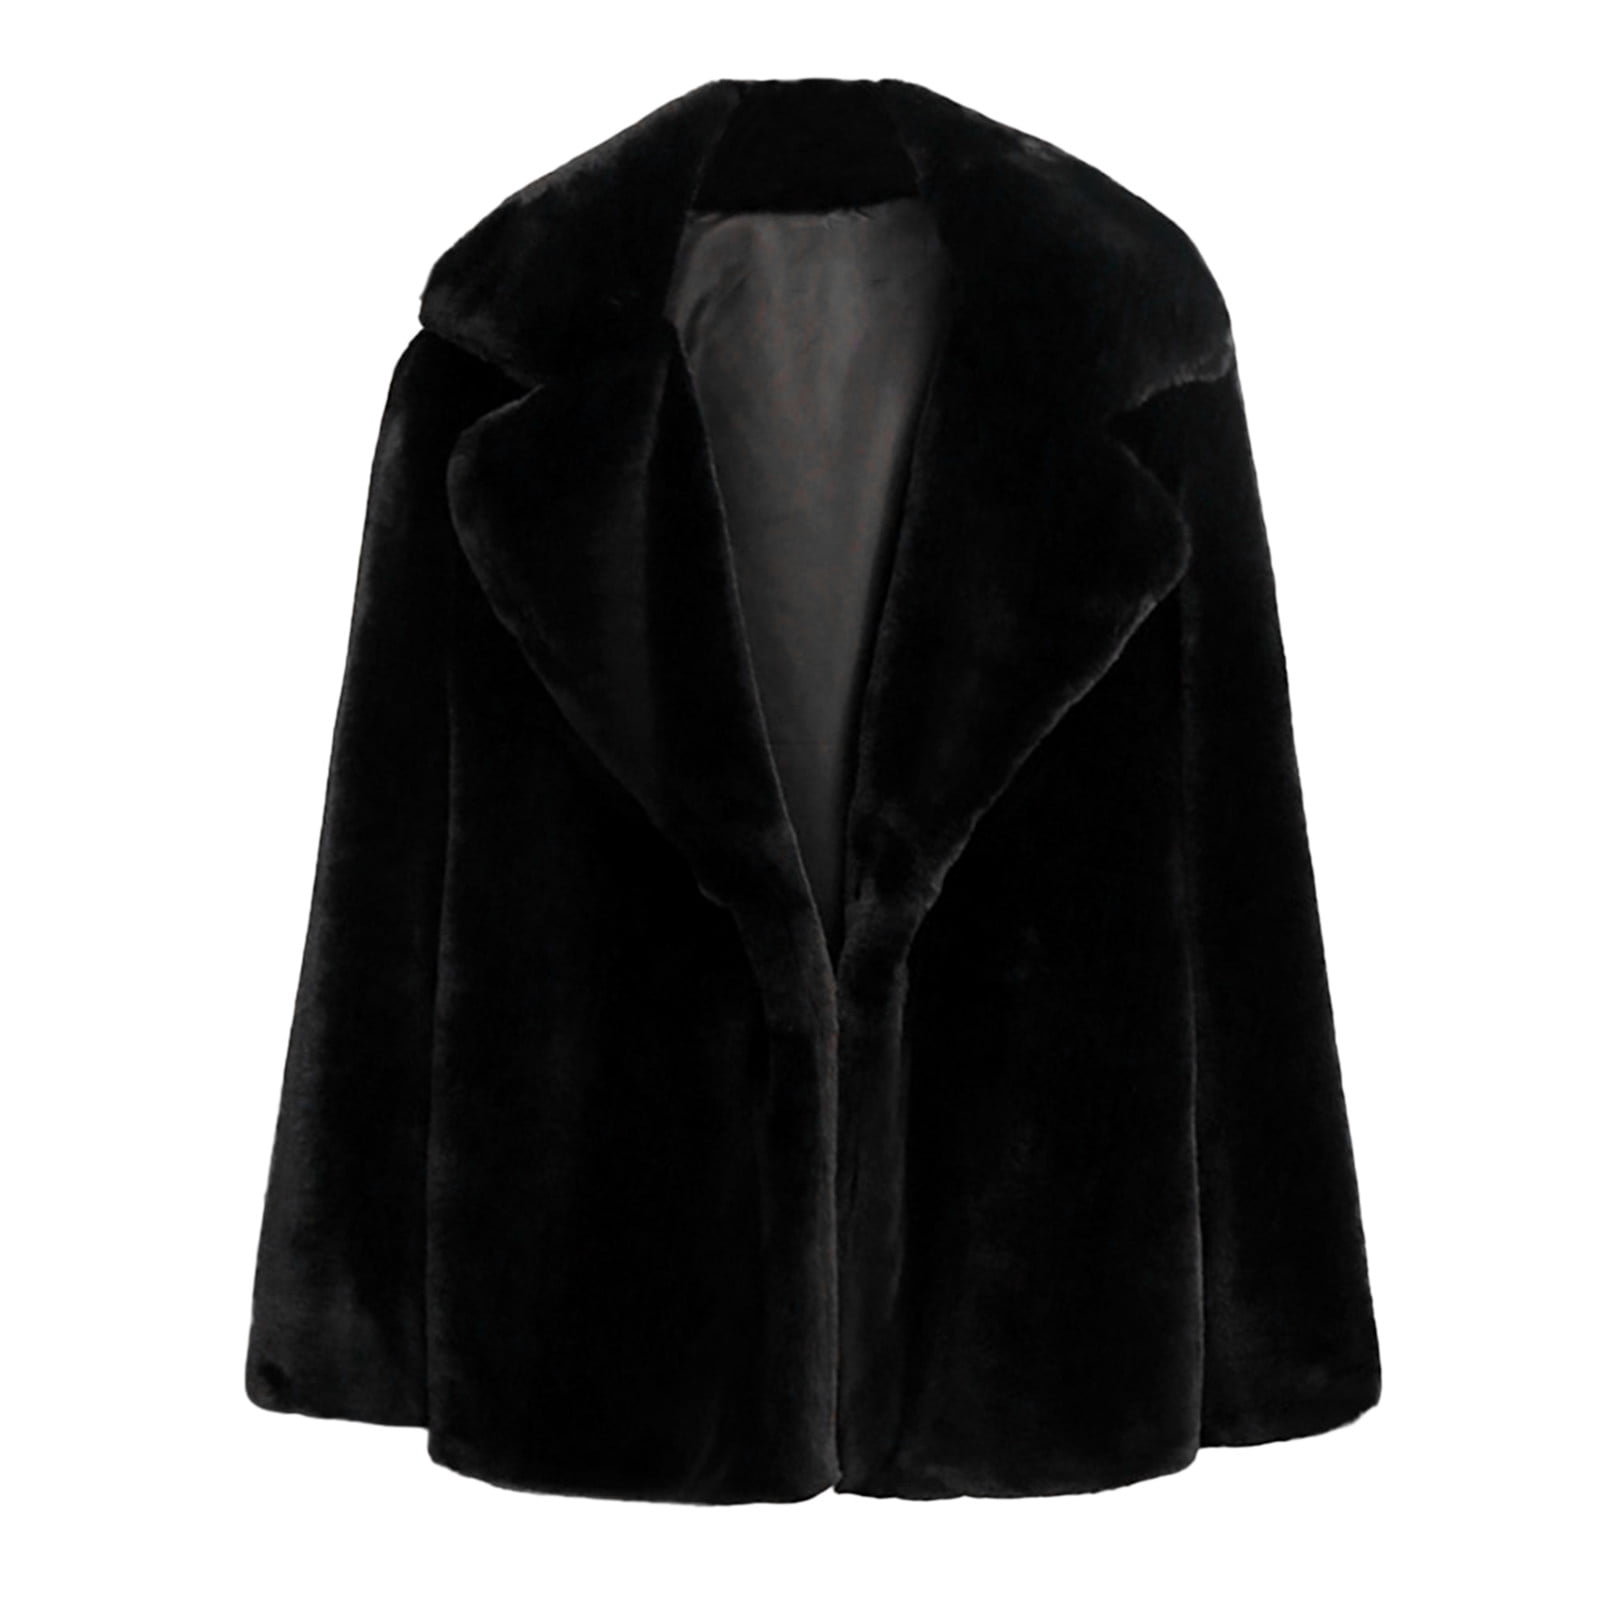 Women Winter Warm Thick Coat Solid Overcoat Outercoat Jacket Cardigan Coat